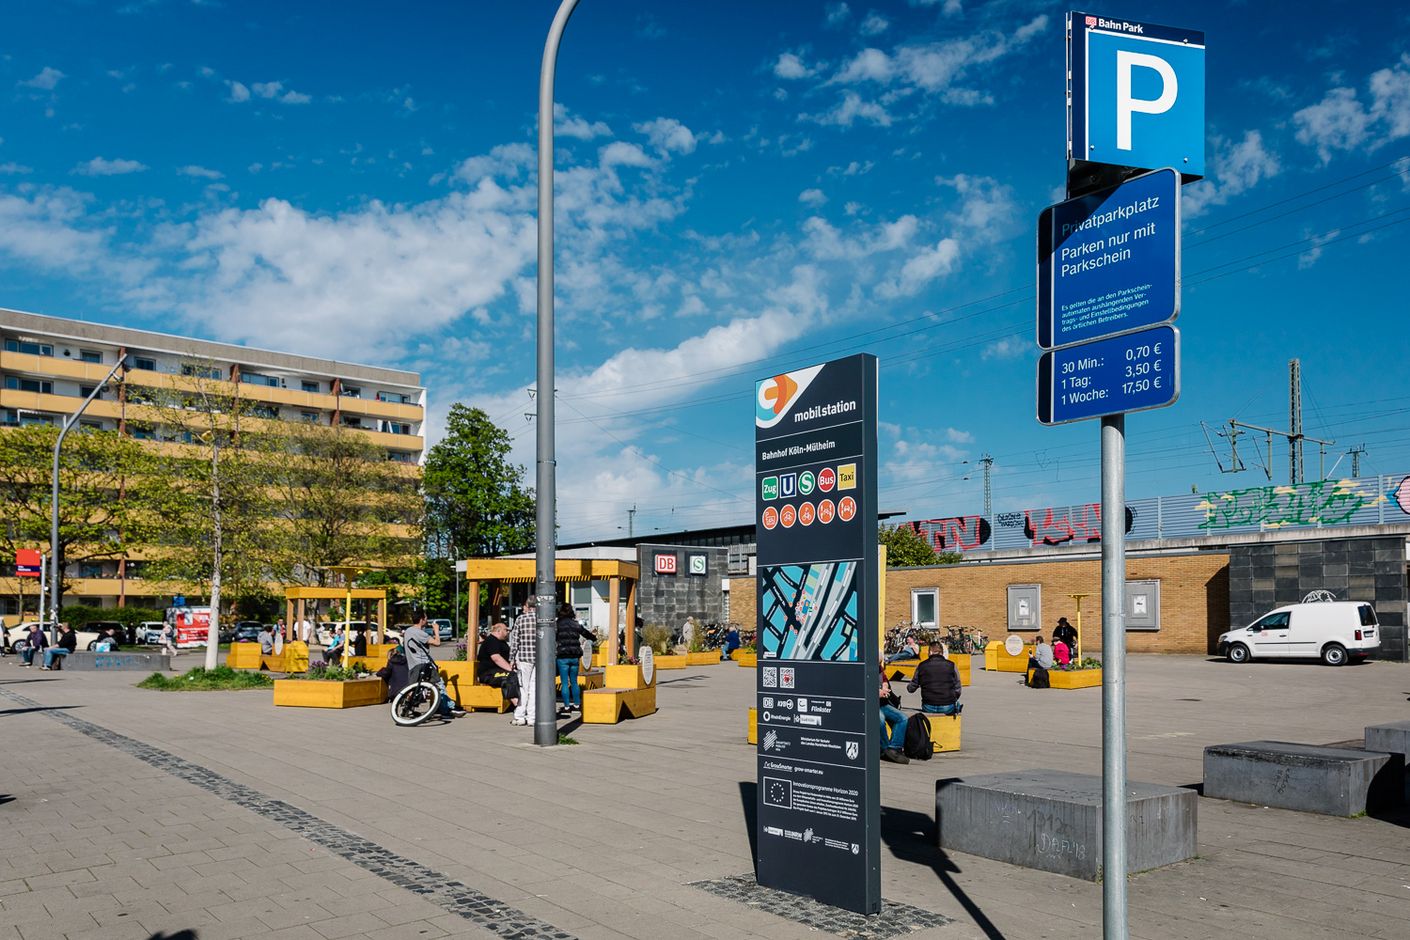 Die Mobilstation Köln-Mühlheim ist klar beschildert und bietet u.a. zahlreiche Sitzgelegenheiten im Außenbereich.